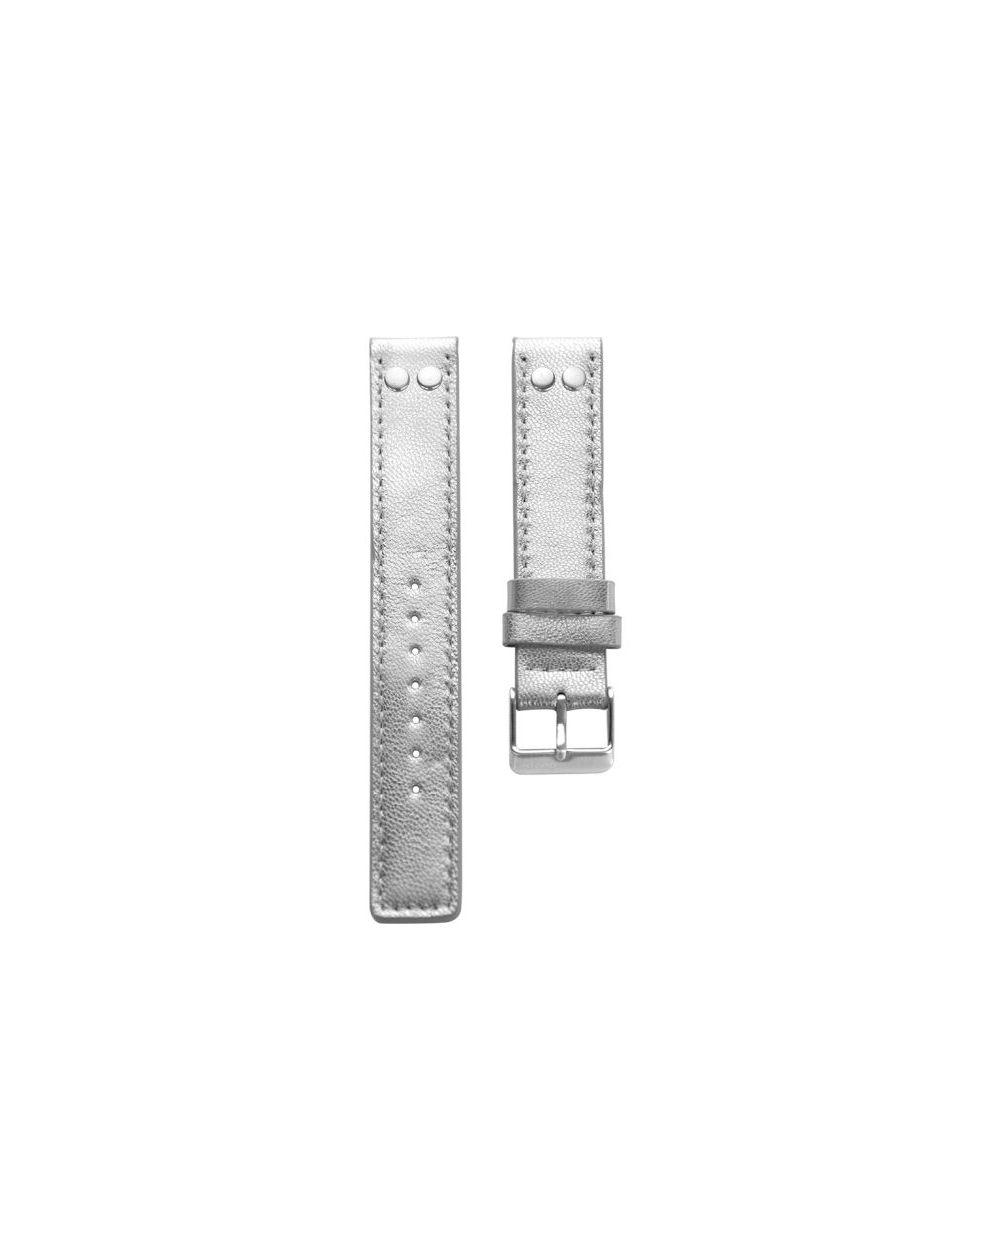 4.22 - silver studs 22 mm. - Bracelet pour montre Oozoo